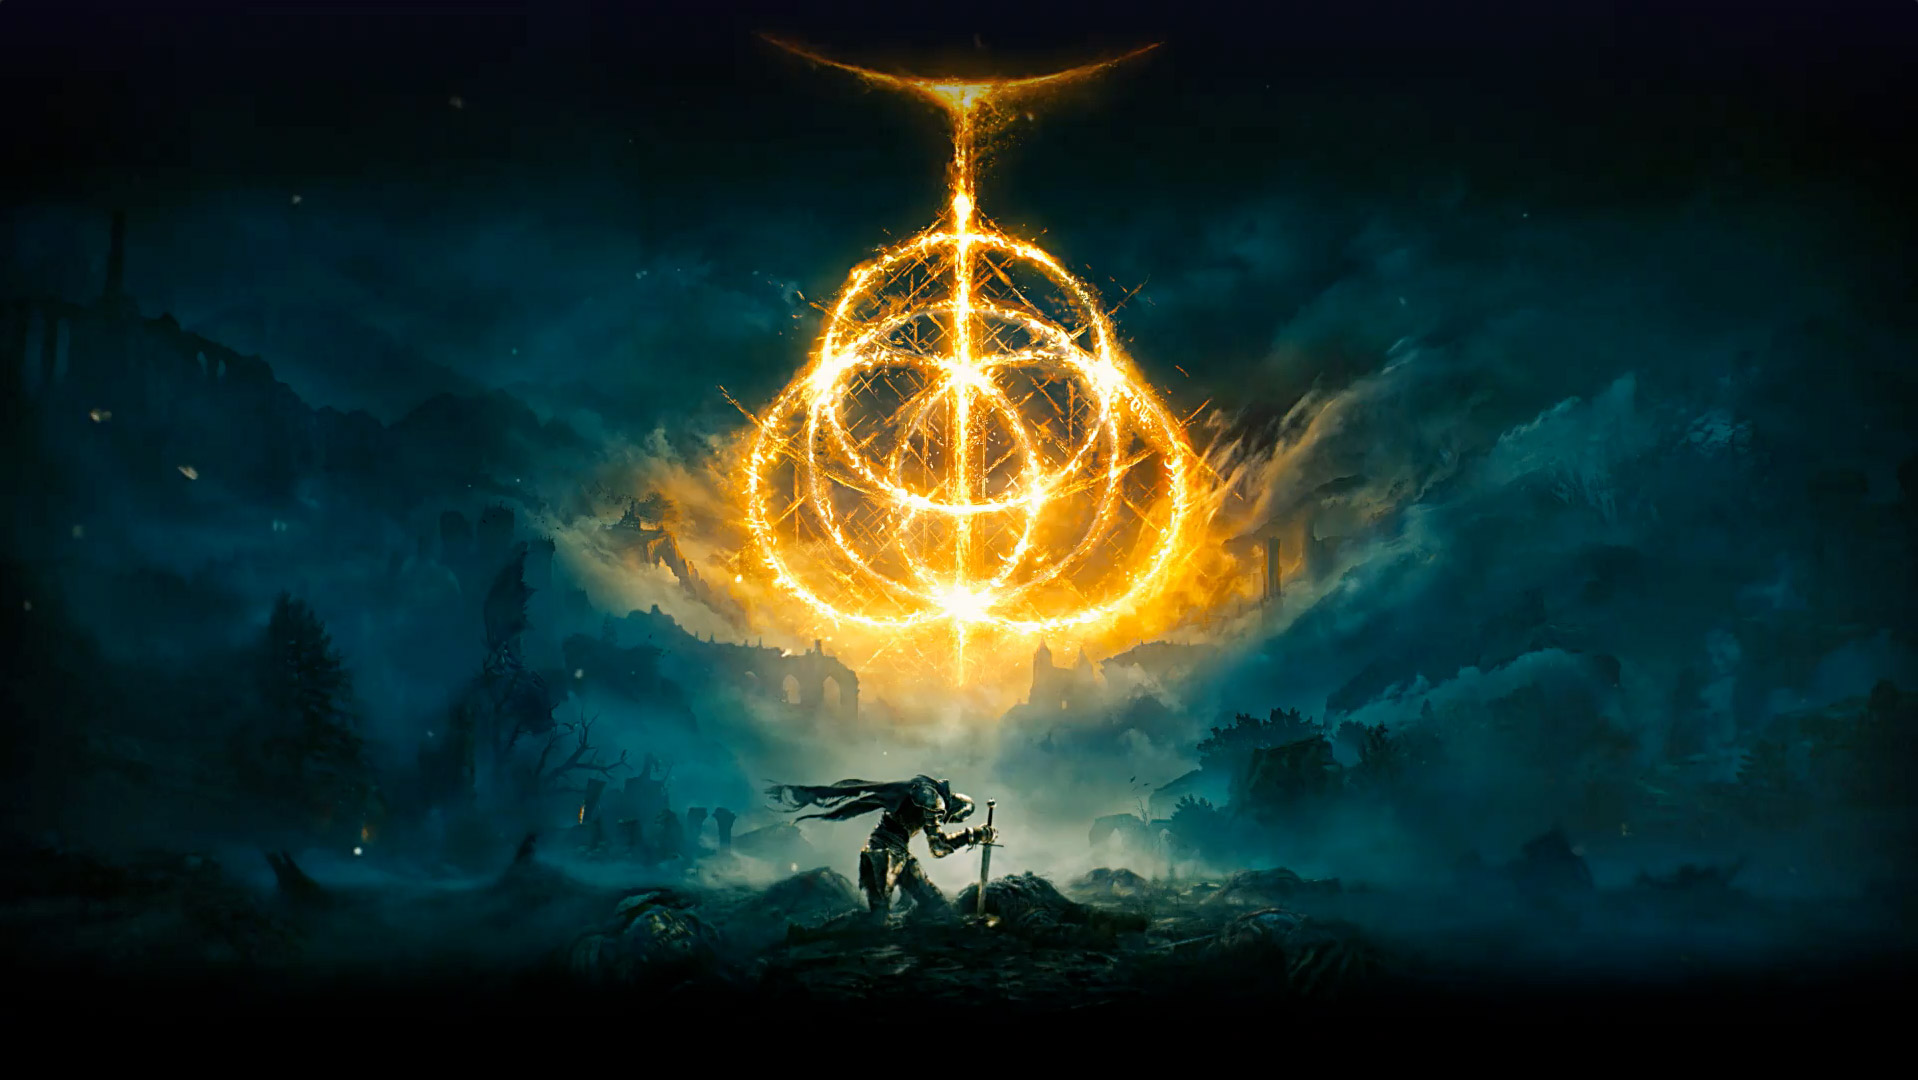 Elden Ring. De multiples anneaux enflammés créant le symbole Elden Ring. Personnage chevalier, avec son épée ancrée dans le sol, dans un paysage désolé recouvert de brume.